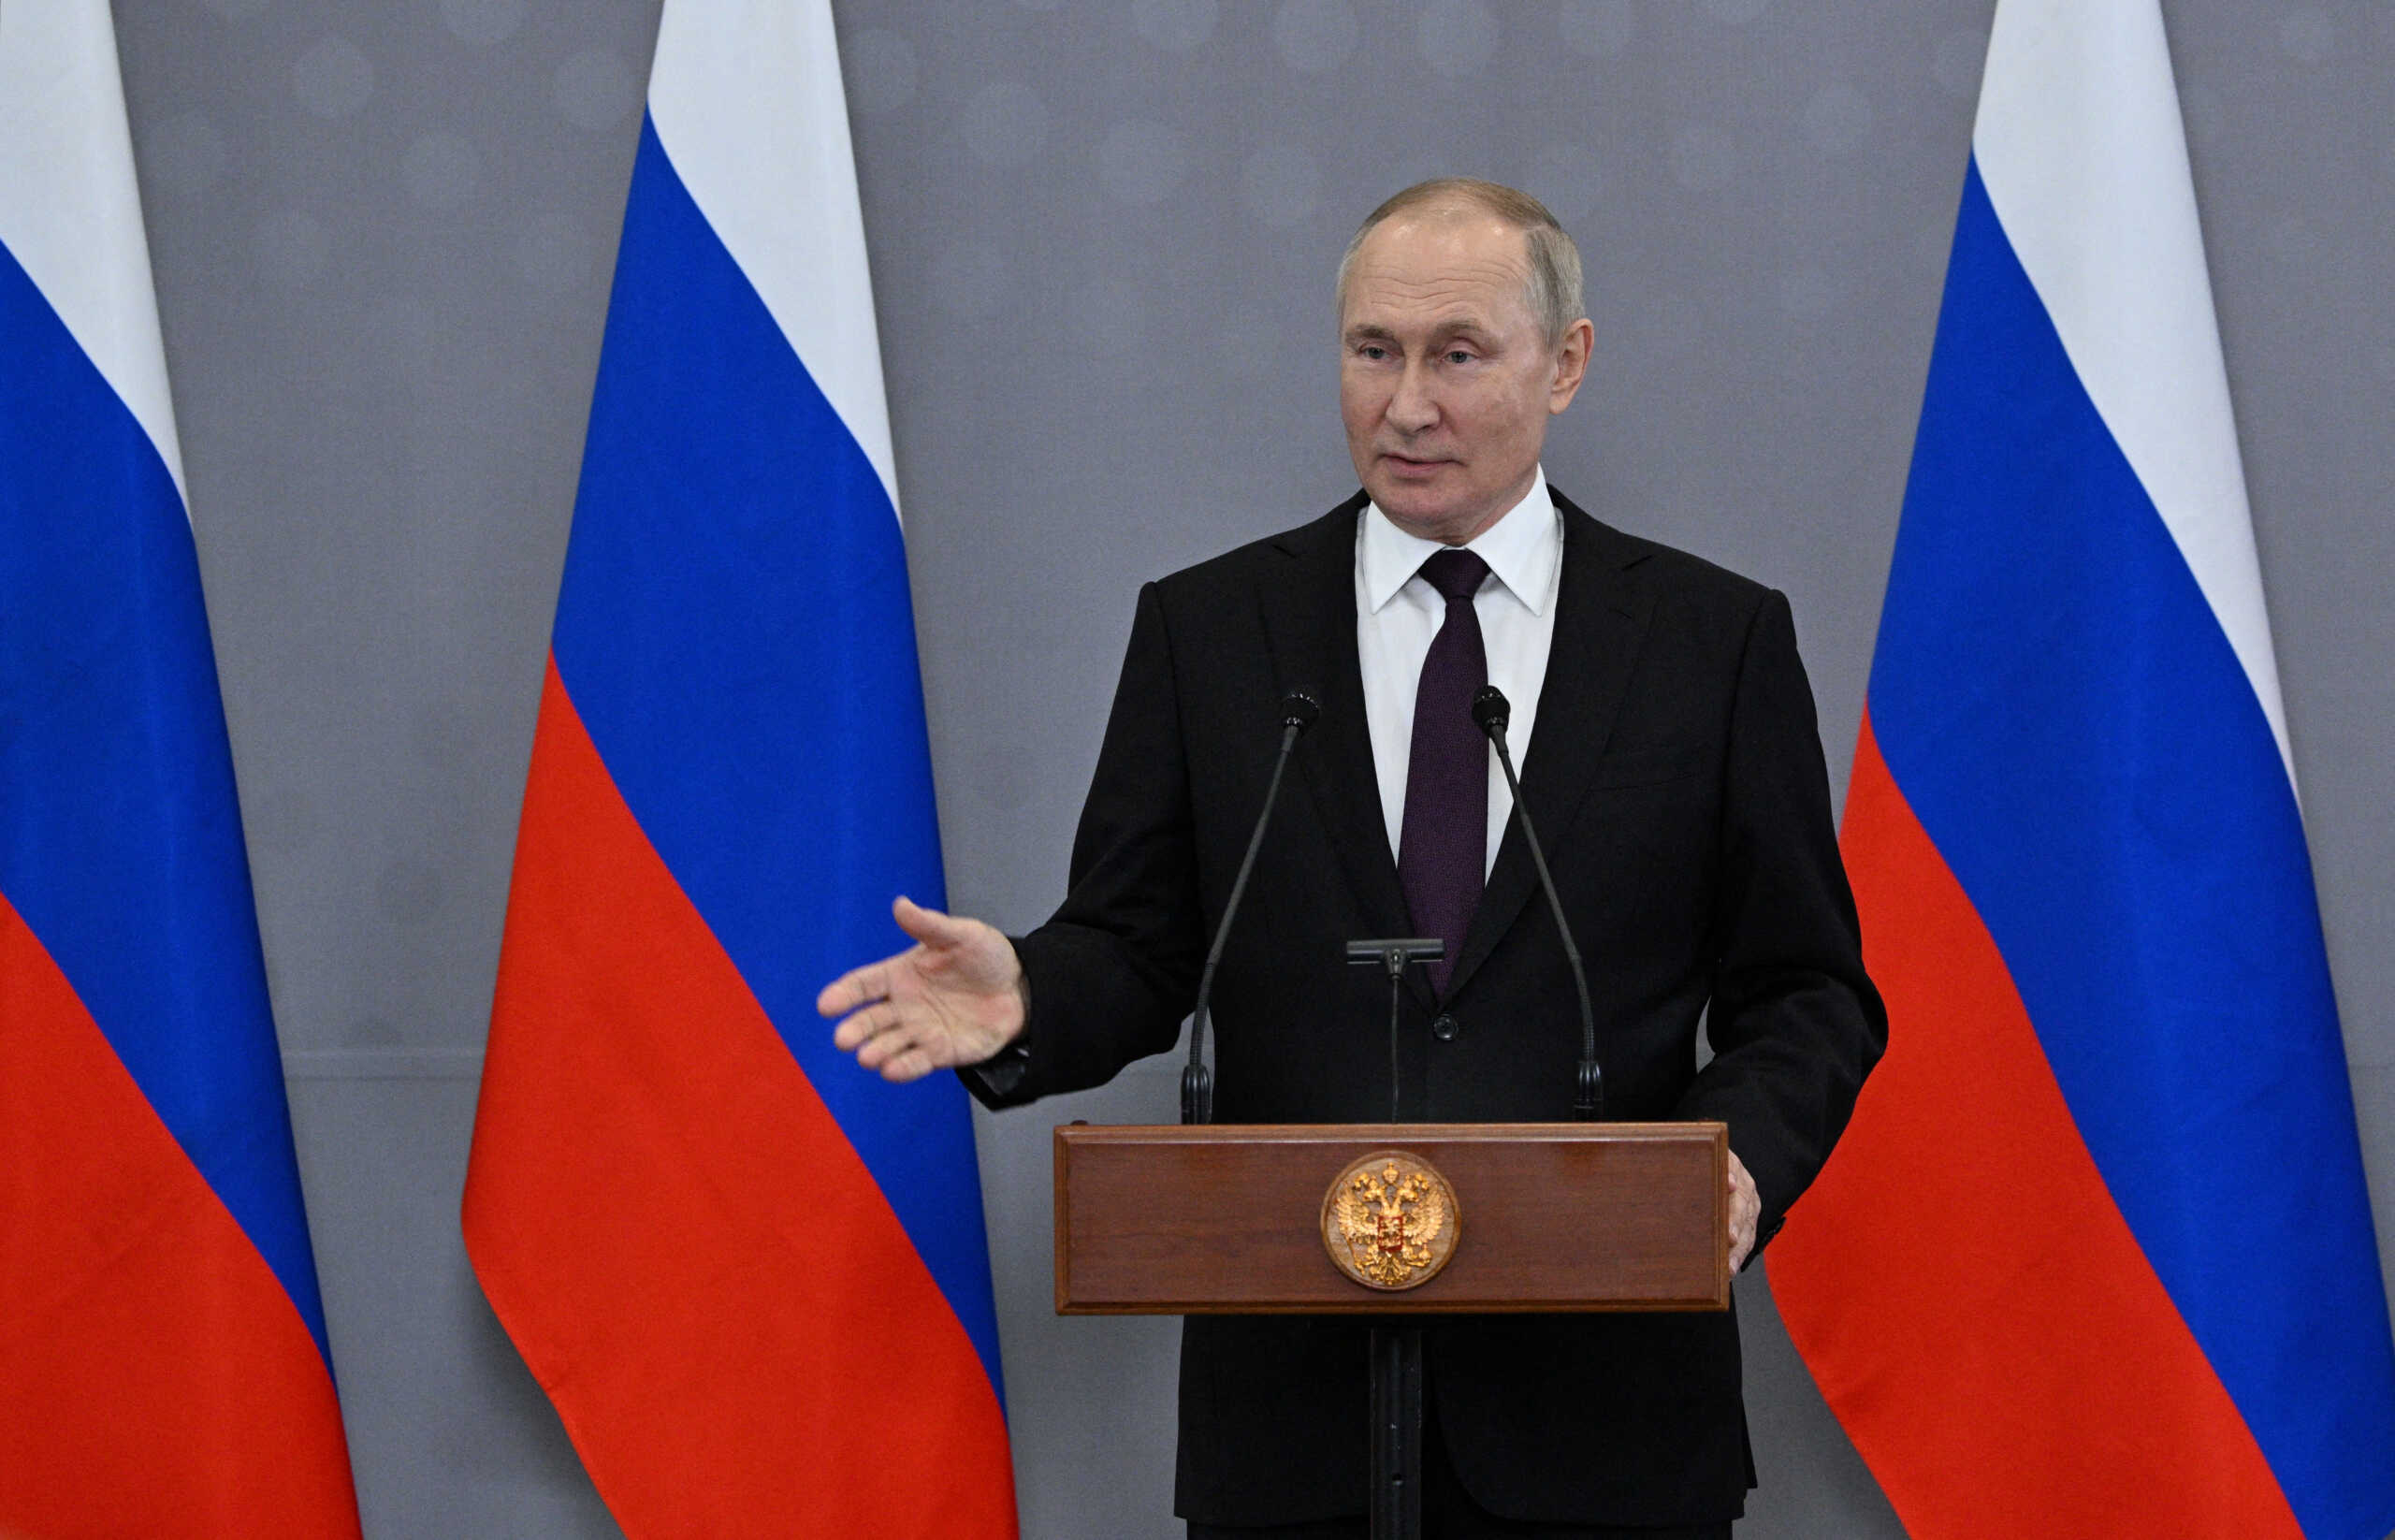 Βλαντιμίρ Πούτιν: Απευθείας σύγκρουση με το ΝΑΤΟ θα οδηγούσε σε «παγκόσμια καταστροφή»